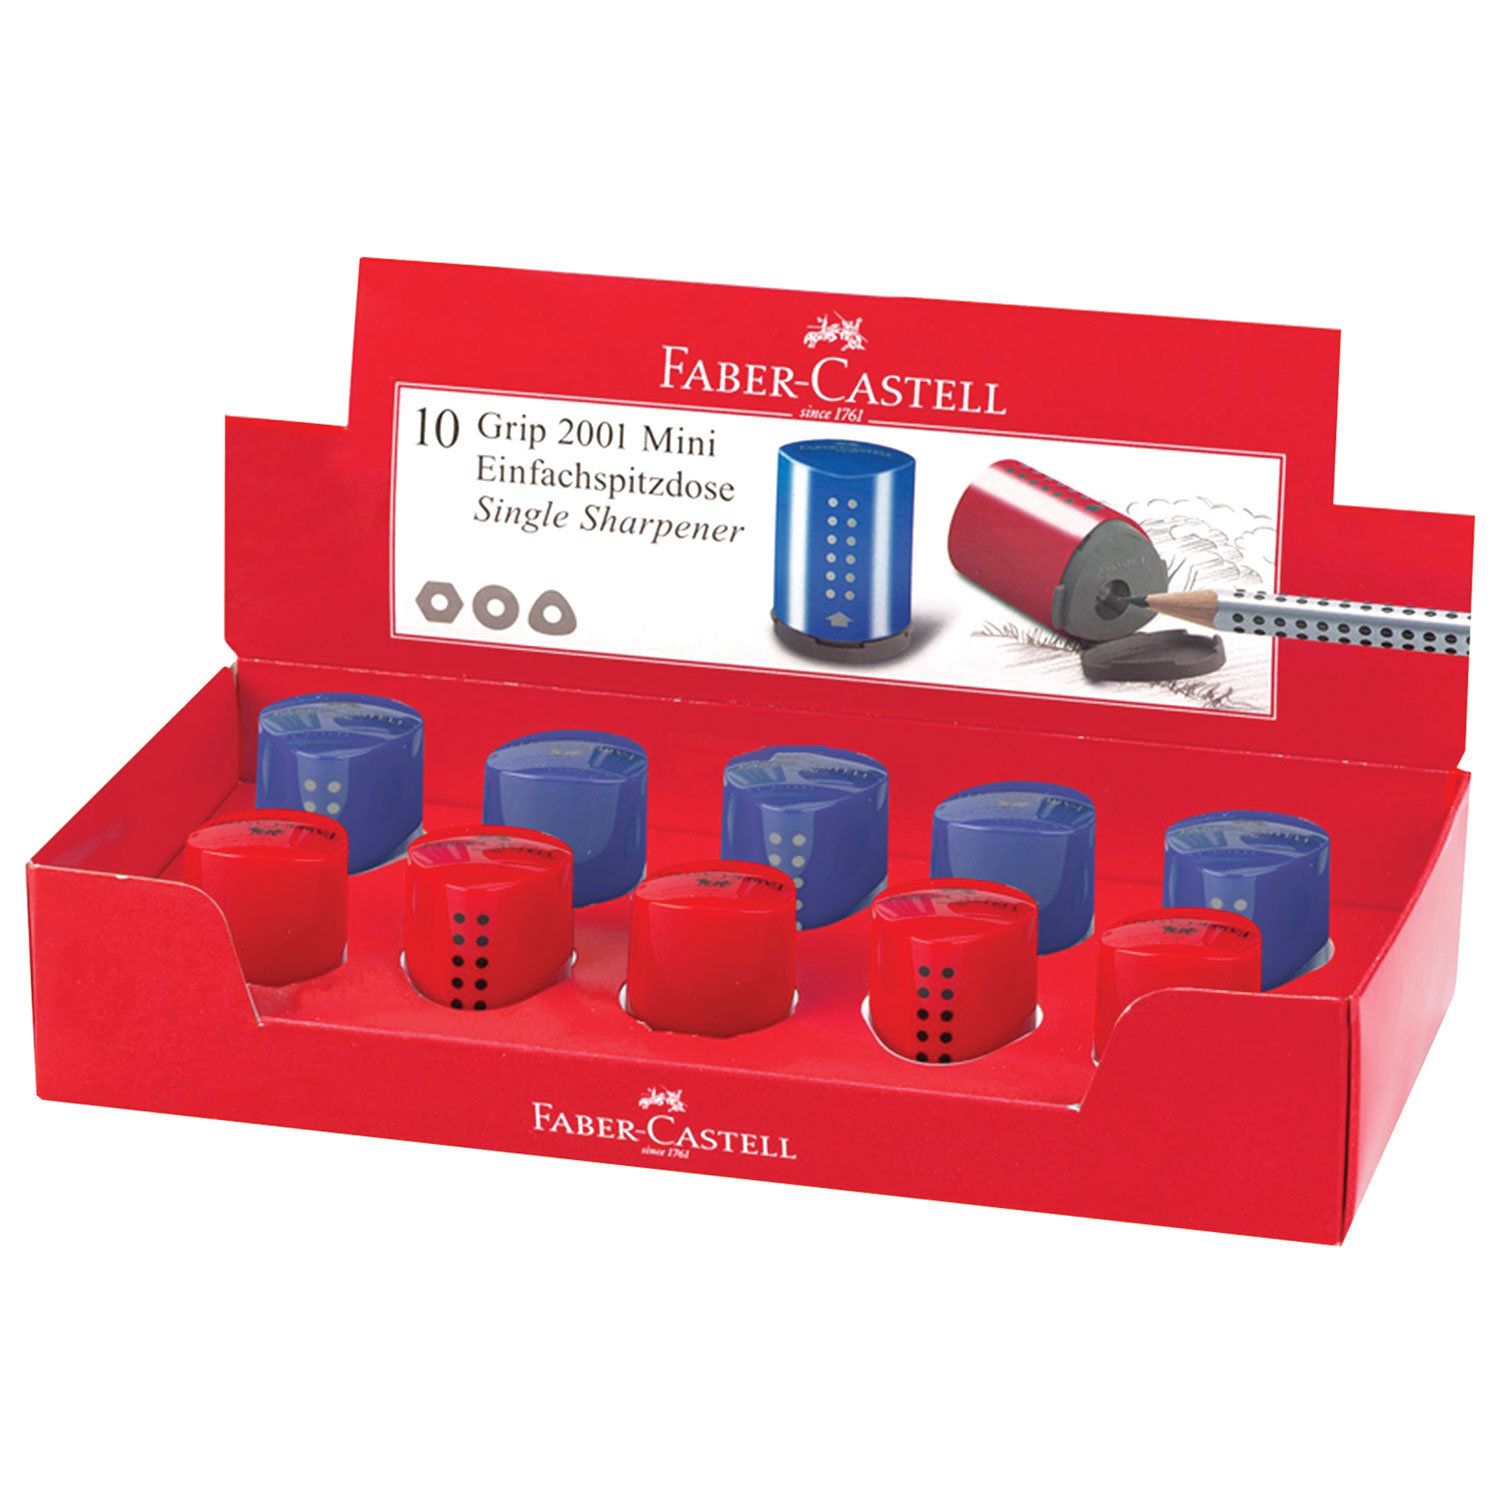 Точилка FABER-CASTELL "Grip 2001 Mini", с контейнером, пластиковая, красная/синяя, 183710